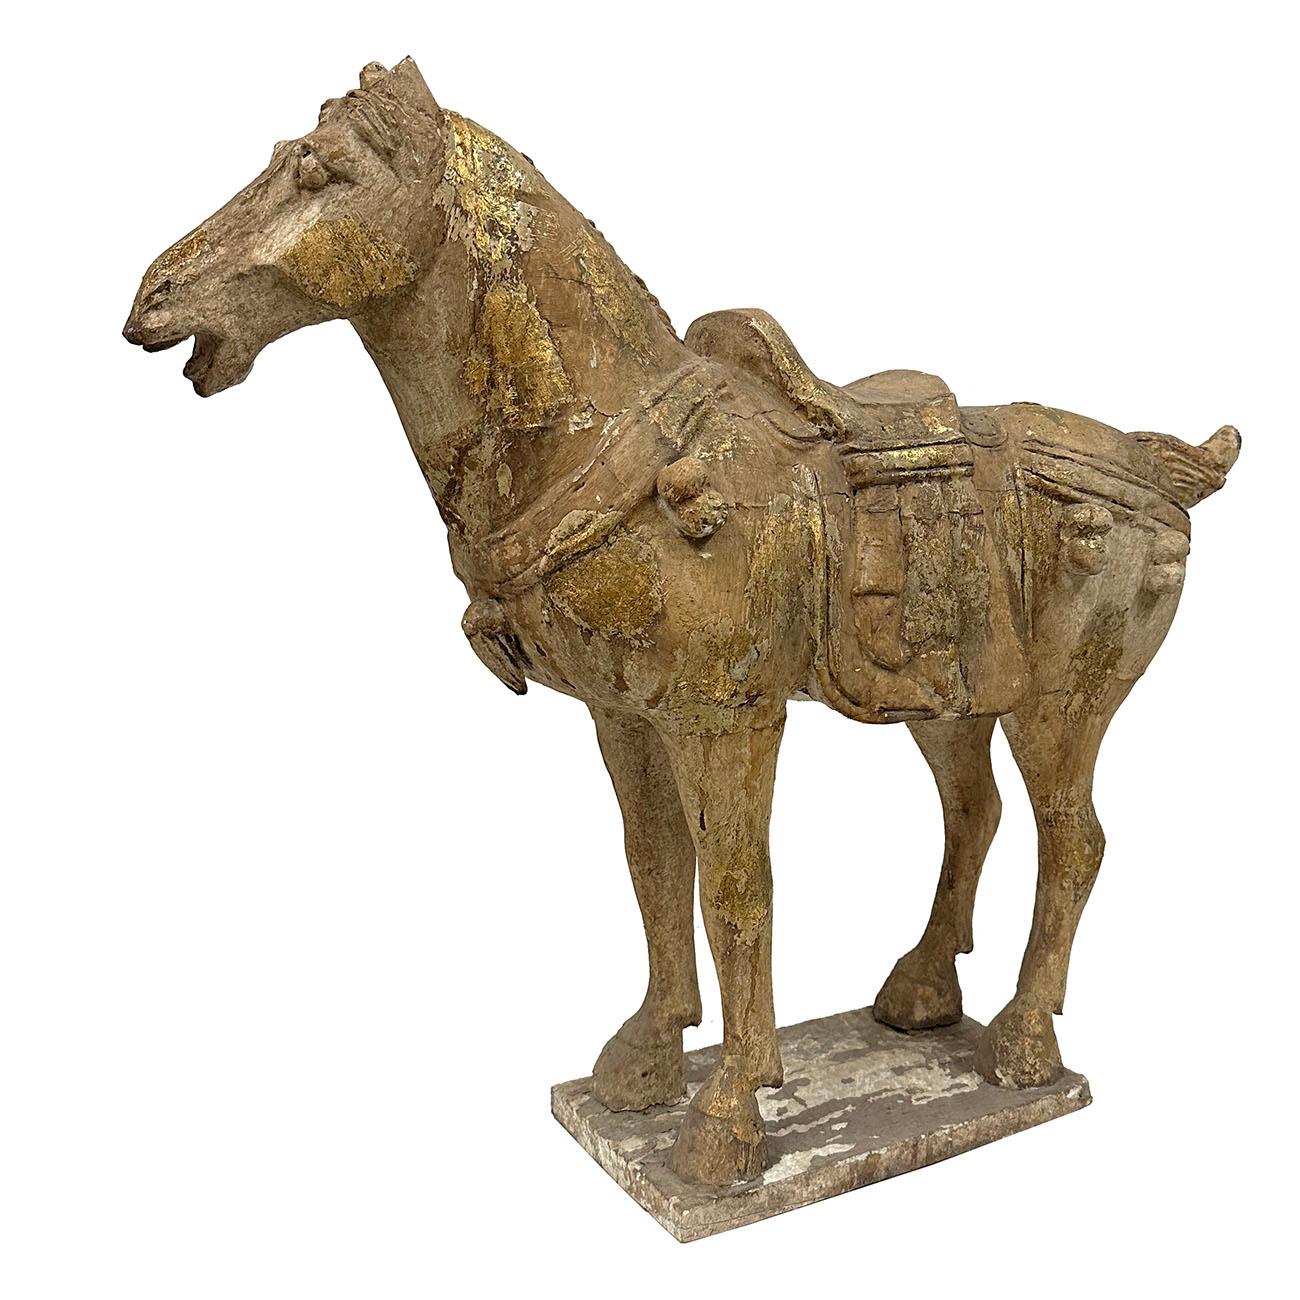 Chinesische vergoldete polychrome Holzschnitzerei im Stil der Tang-Dynastie Pferdeskulptur.  Featured schön von Hand geschnitzt und handbemalt mit vergoldeten hervorgehoben auf die Skulptur.  Anhand der Bilder können Sie erkennen, dass die Skulptur